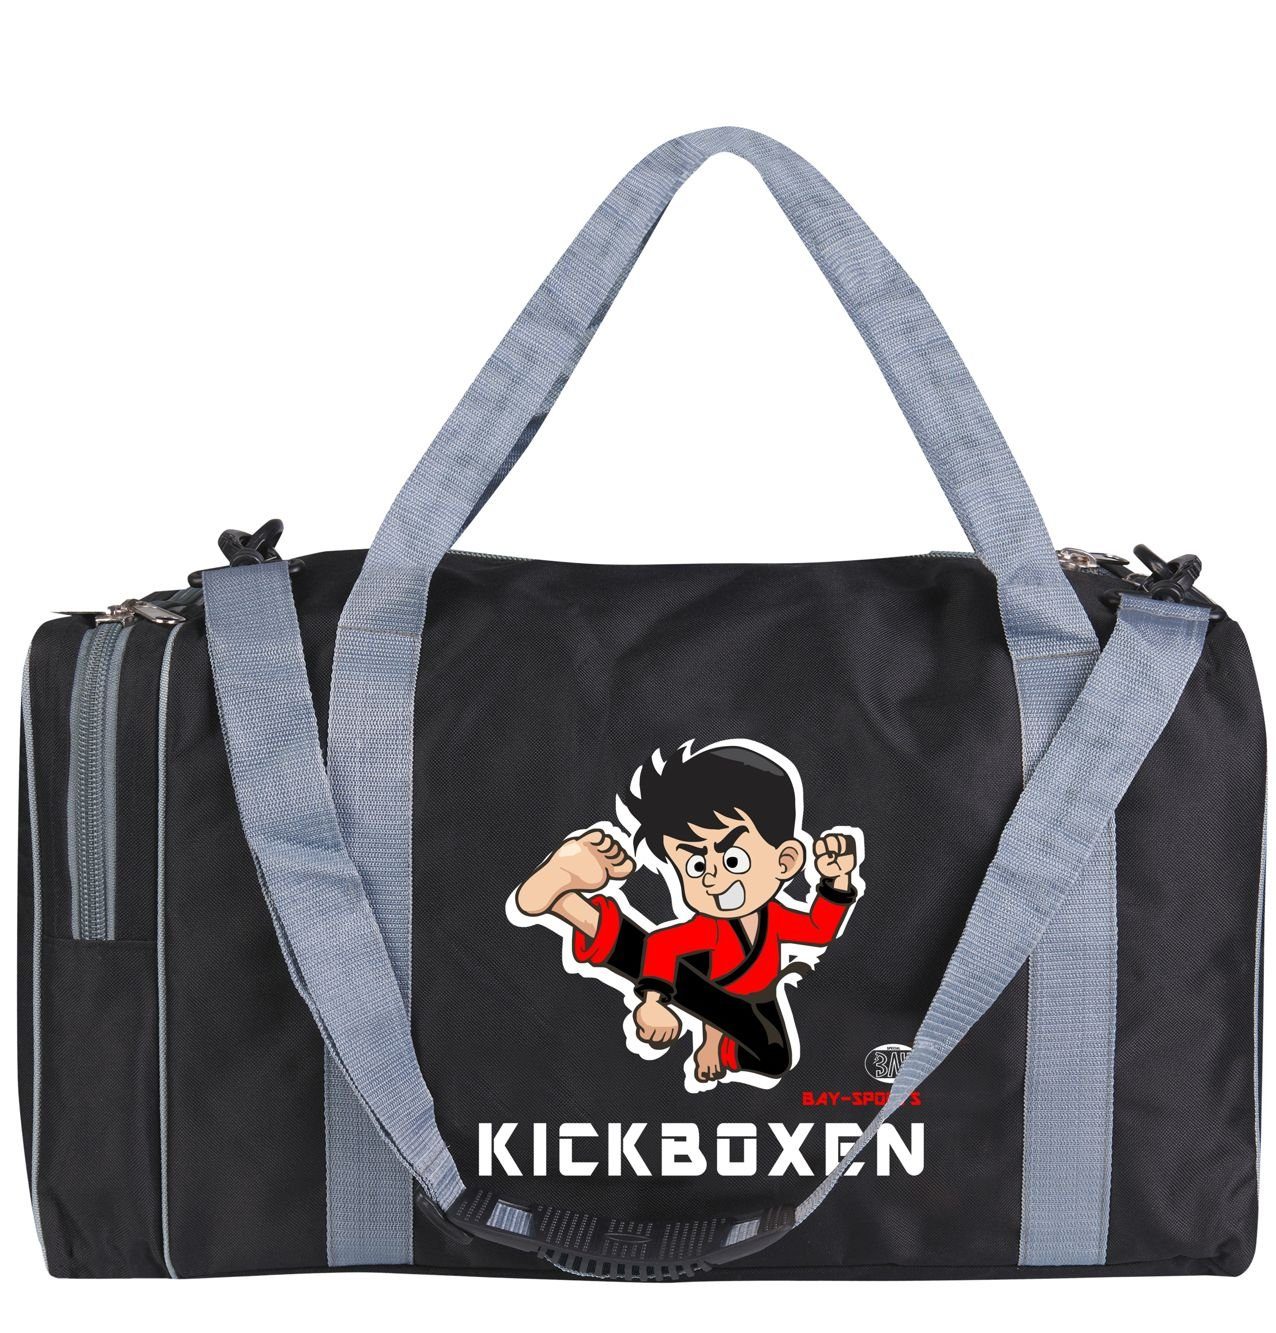 BAY-Sports Sporttasche Sporttasche für Kinder Kickboxen schwarz/grau 50 cm